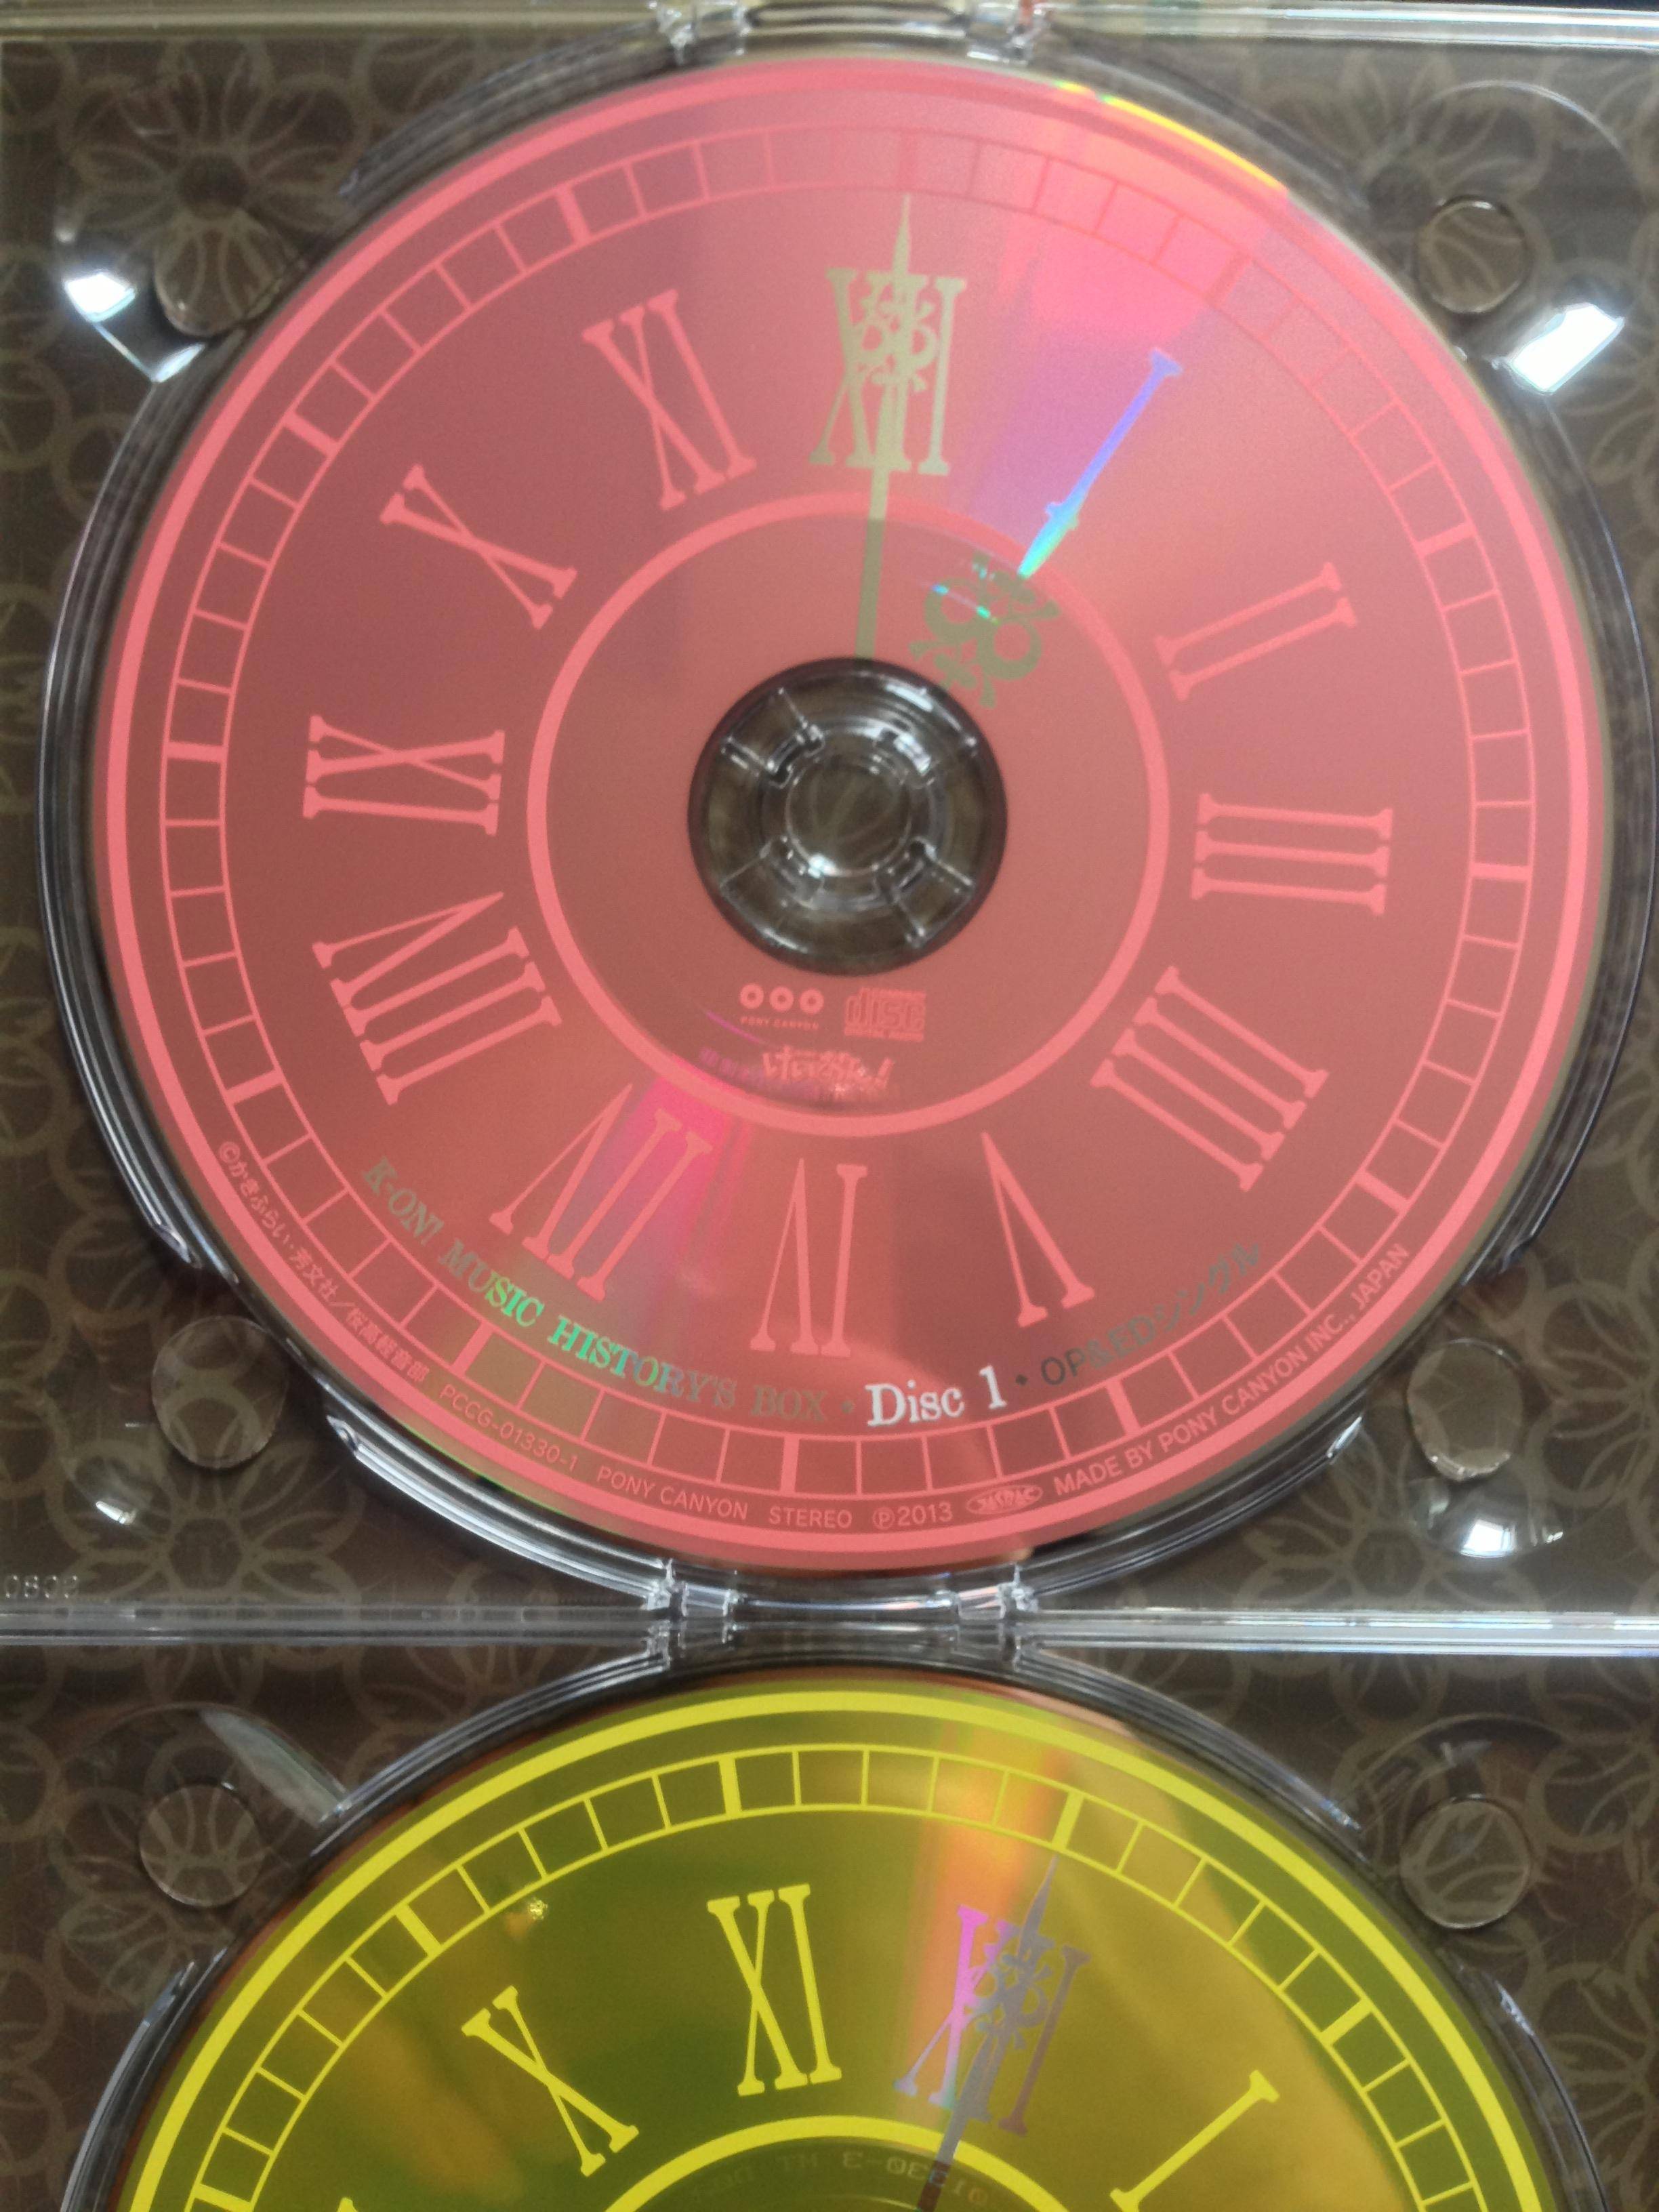 けいおん！』CD BOX『K-ON! MUSIC HISTORY'S BOX』でCDレーベルに誤植